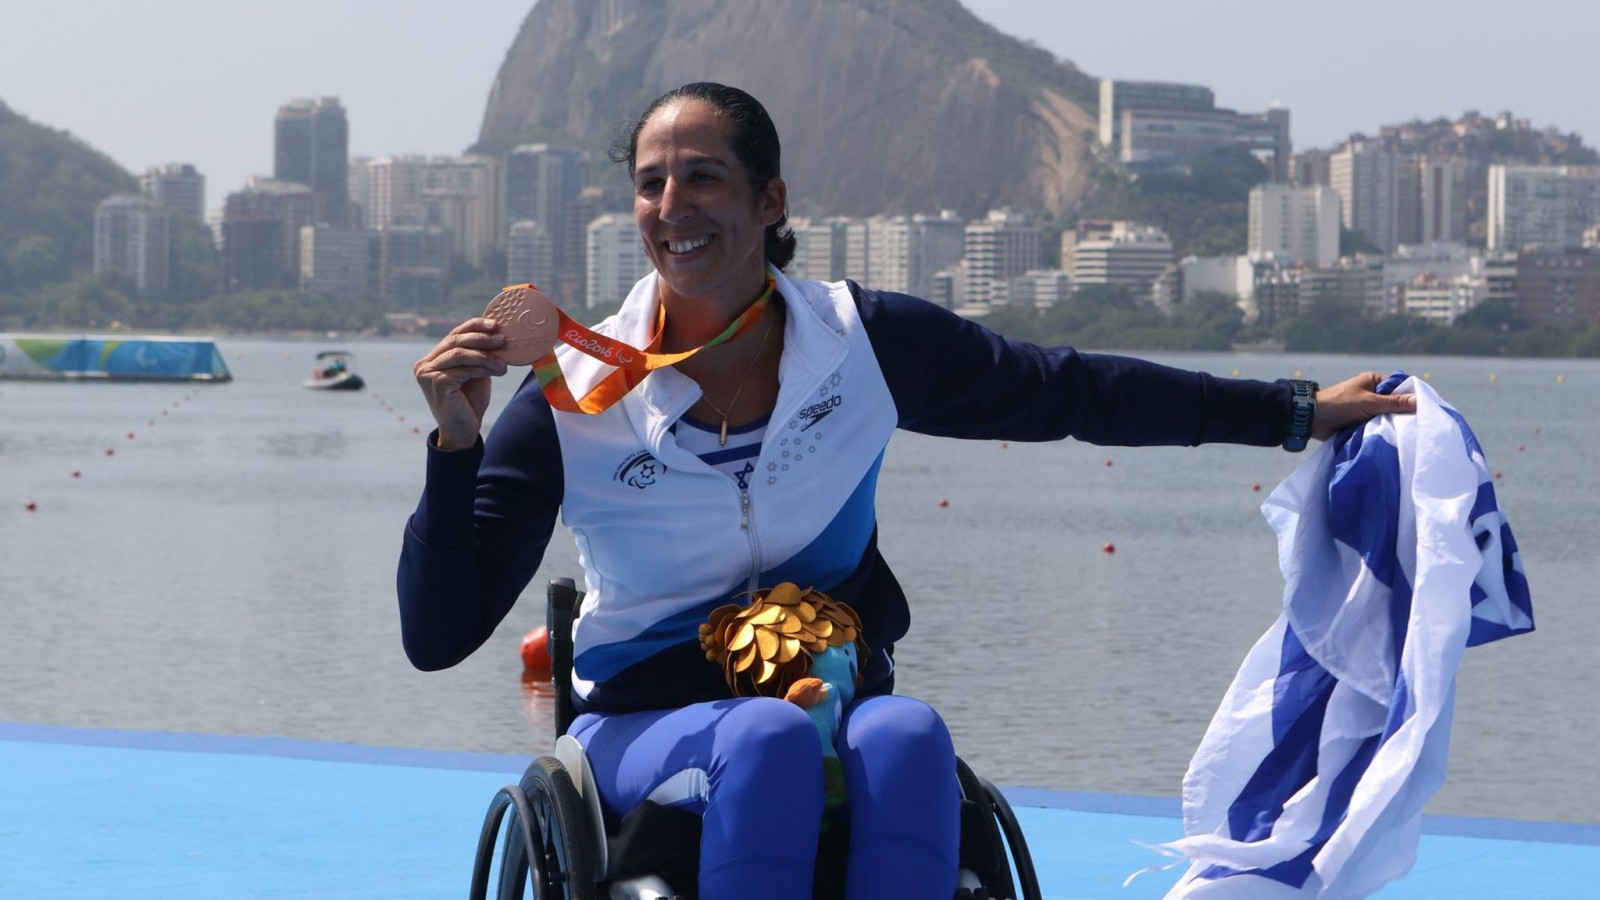 بطلة التجديف موران سموئيل مع الميدالية البرونزية في الألعاب البارالمبية ريو 2016. إحدى ميداليات إسرائيل الـ 375 (تصوير: كيرن إيزكسون، اتحاد رياضات المعاقين)